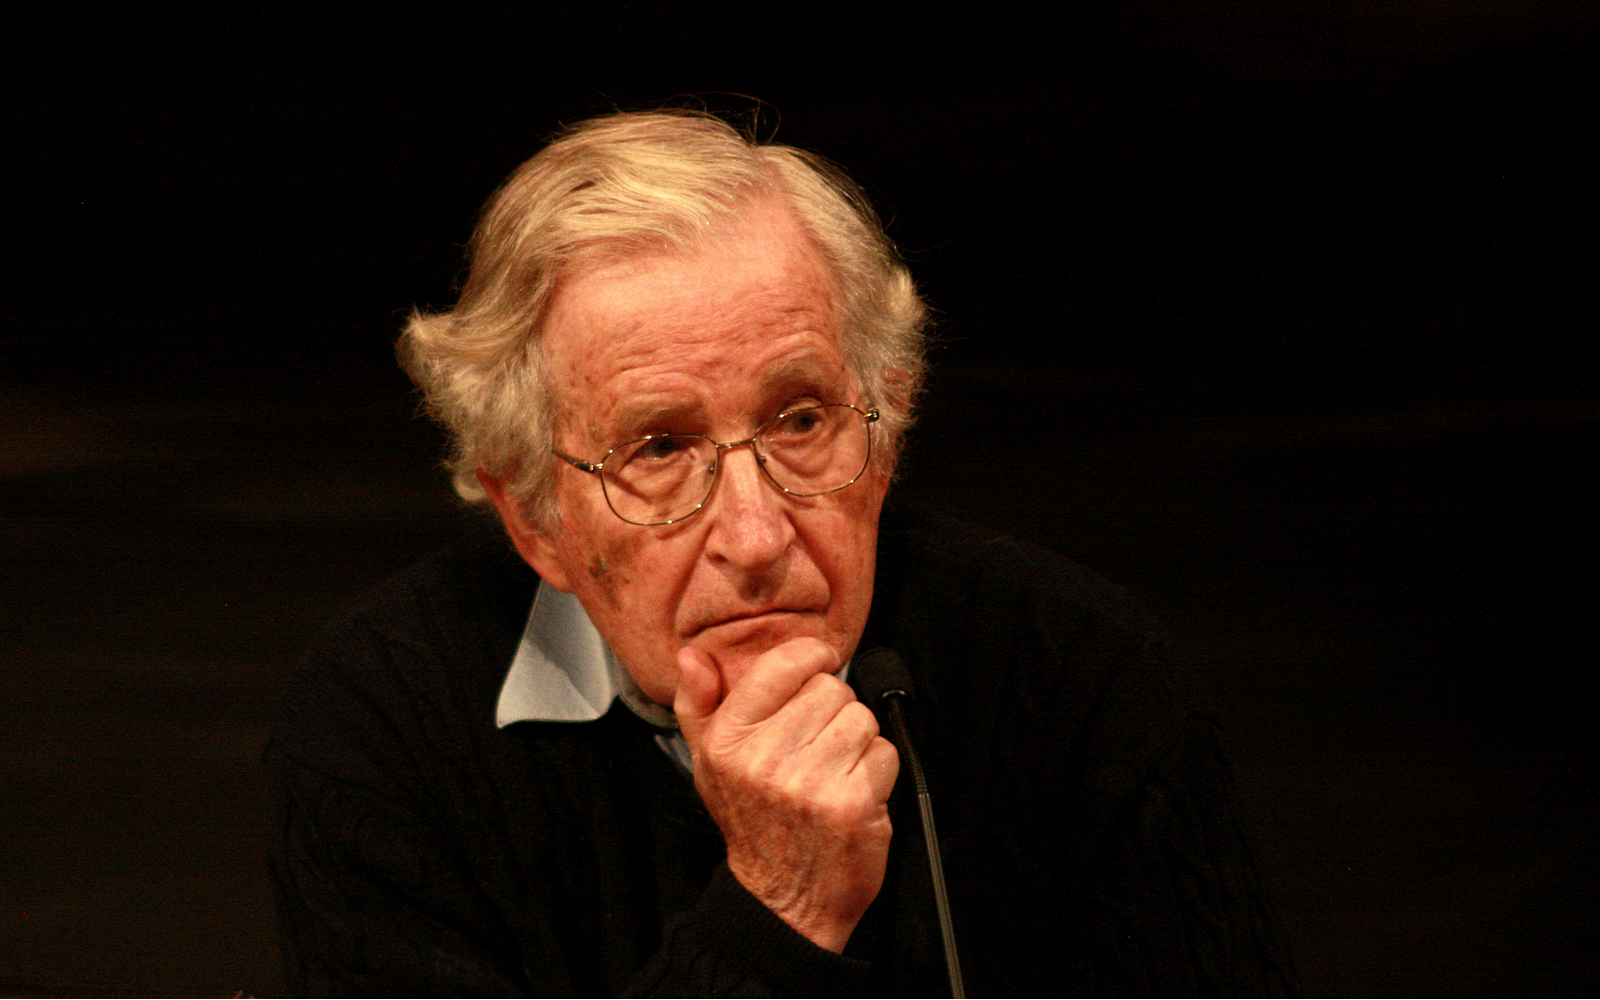 El concepto ayuda humanitaria es casi todo acto agresivo de cualquier potencia: Chomsky 